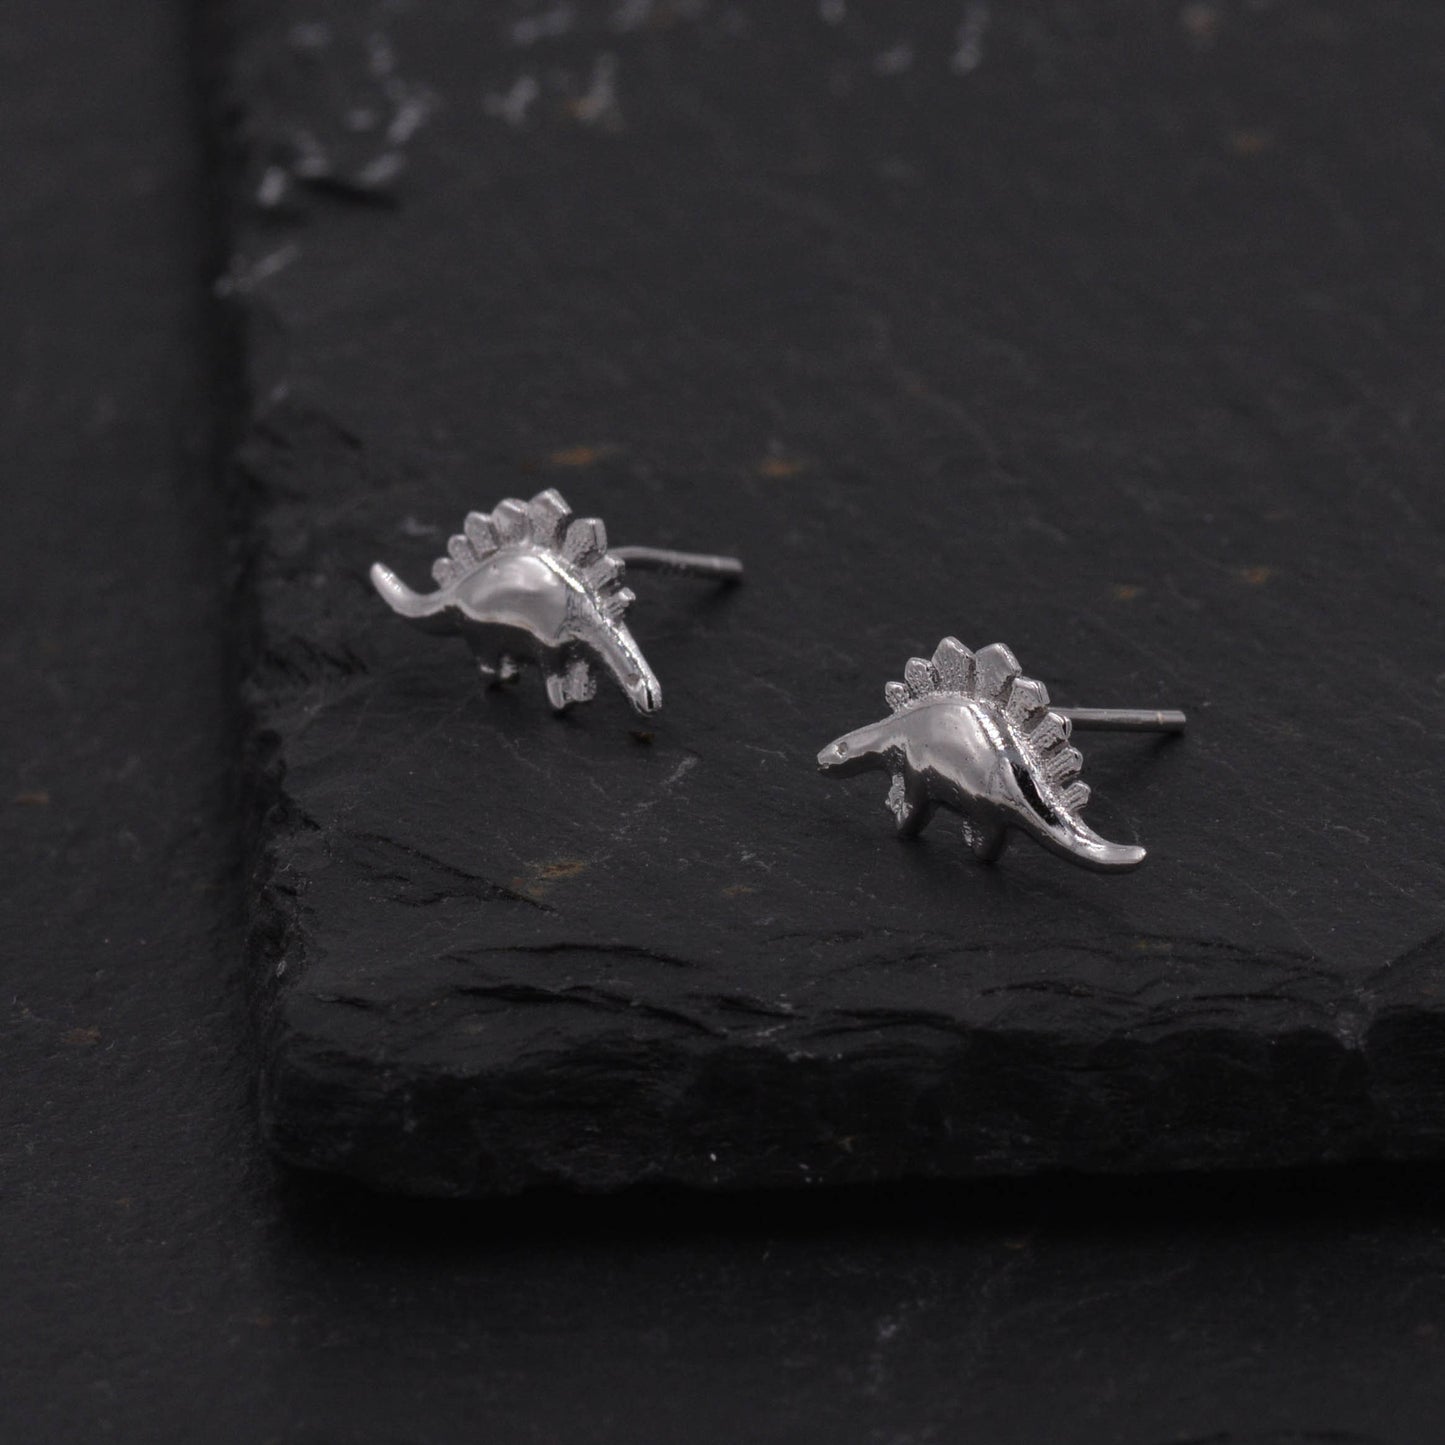 Super Cute Little  Stegosaurus Dinosaur Stud Earrings in Sterling Silver - Cute, Fun Sweet Quirky Jewellery